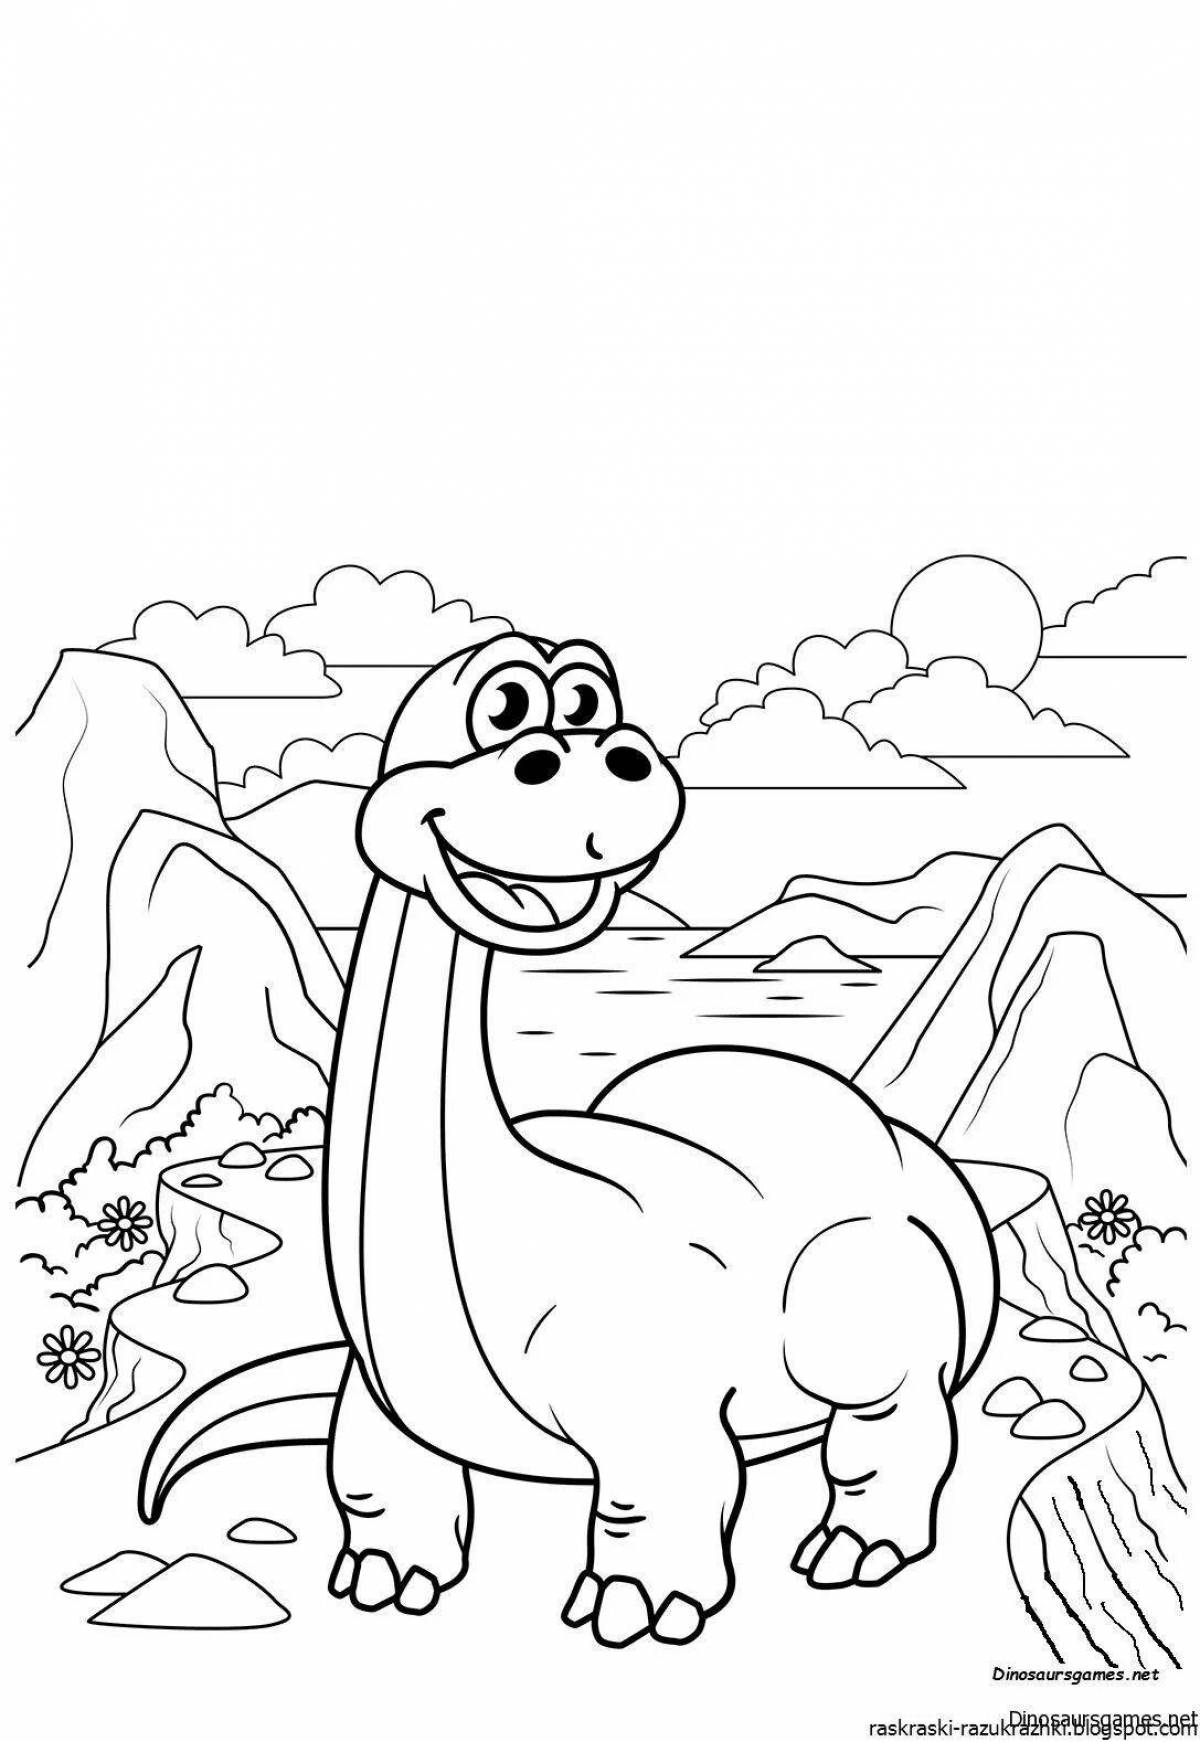 Очаровательная раскраска динозавров для детей 3-4 лет